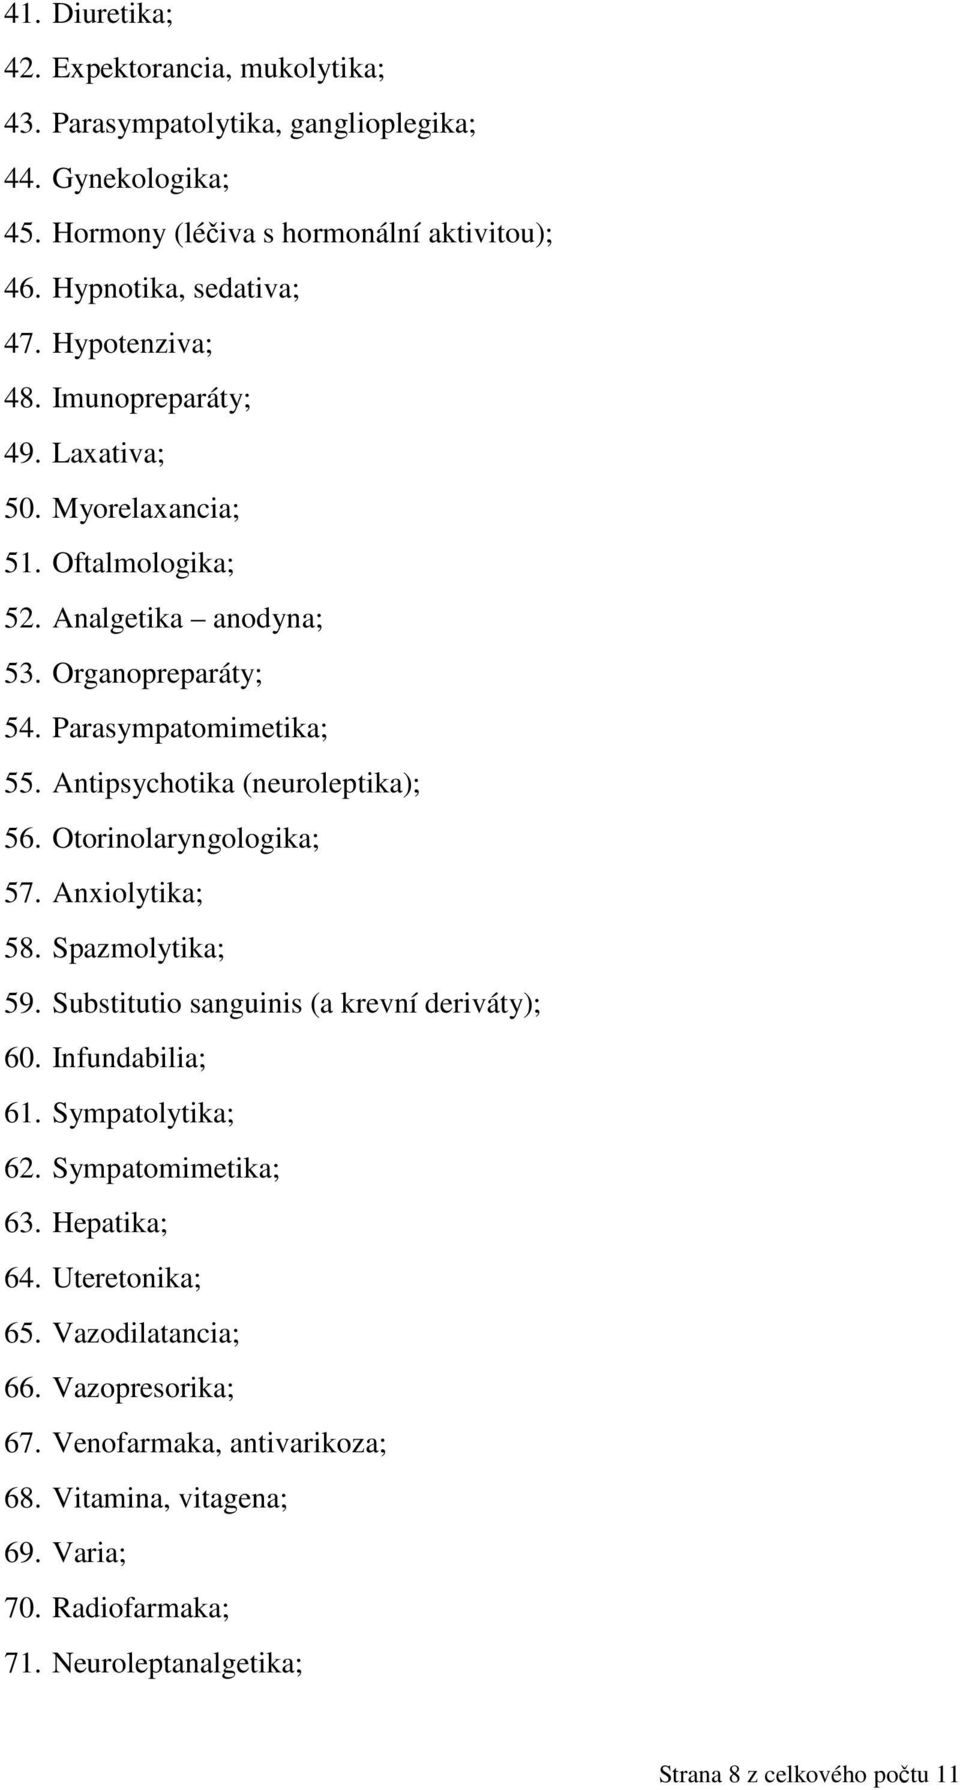 Antipsychotika (neuroleptika); 56. Otorinolaryngologika; 57. Anxiolytika; 58. Spazmolytika; 59. Substitutio sanguinis (a krevní deriváty); 60. Infundabilia; 61. Sympatolytika; 62.